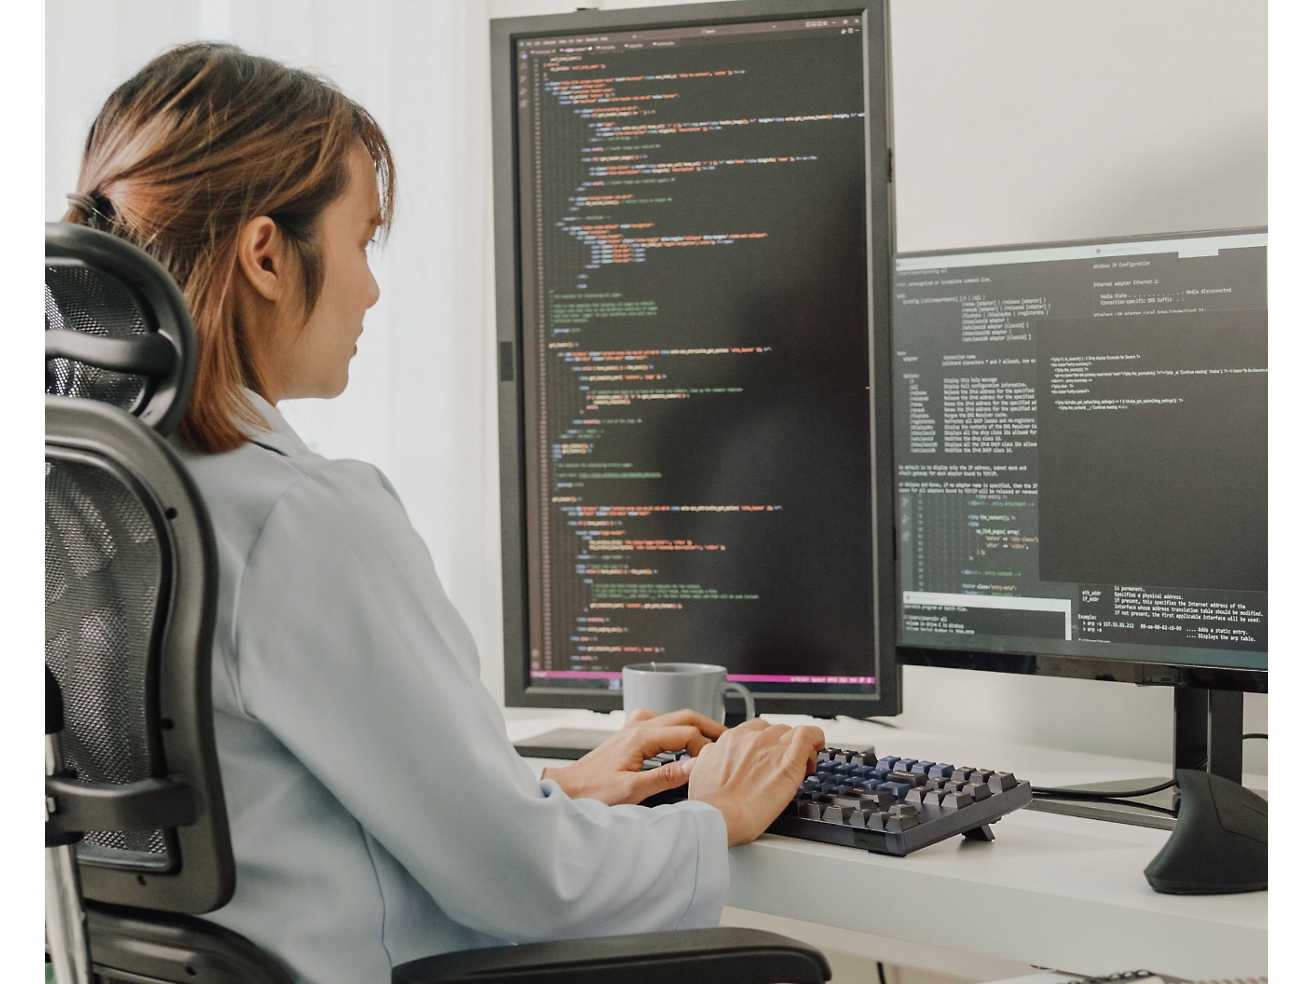 一個女人坐在辦公椅上，在電腦上編寫程式碼，電腦上有多個螢幕顯示了程式碼。